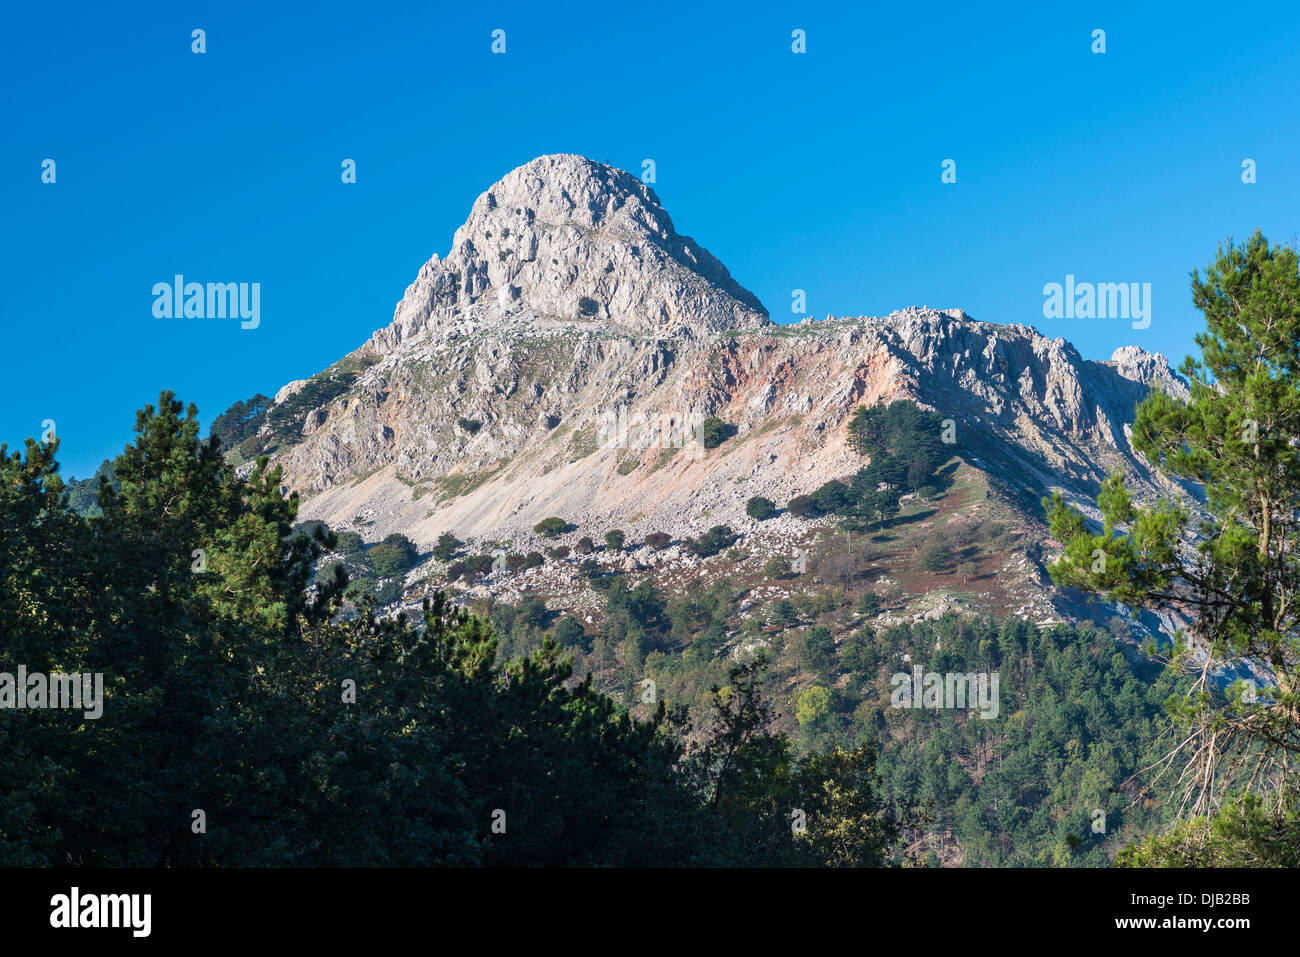 Mt Rocca di Novara, 1340 m, near Novara di Sicilia, Province of Messina, Sicily, Italy Stock Photo